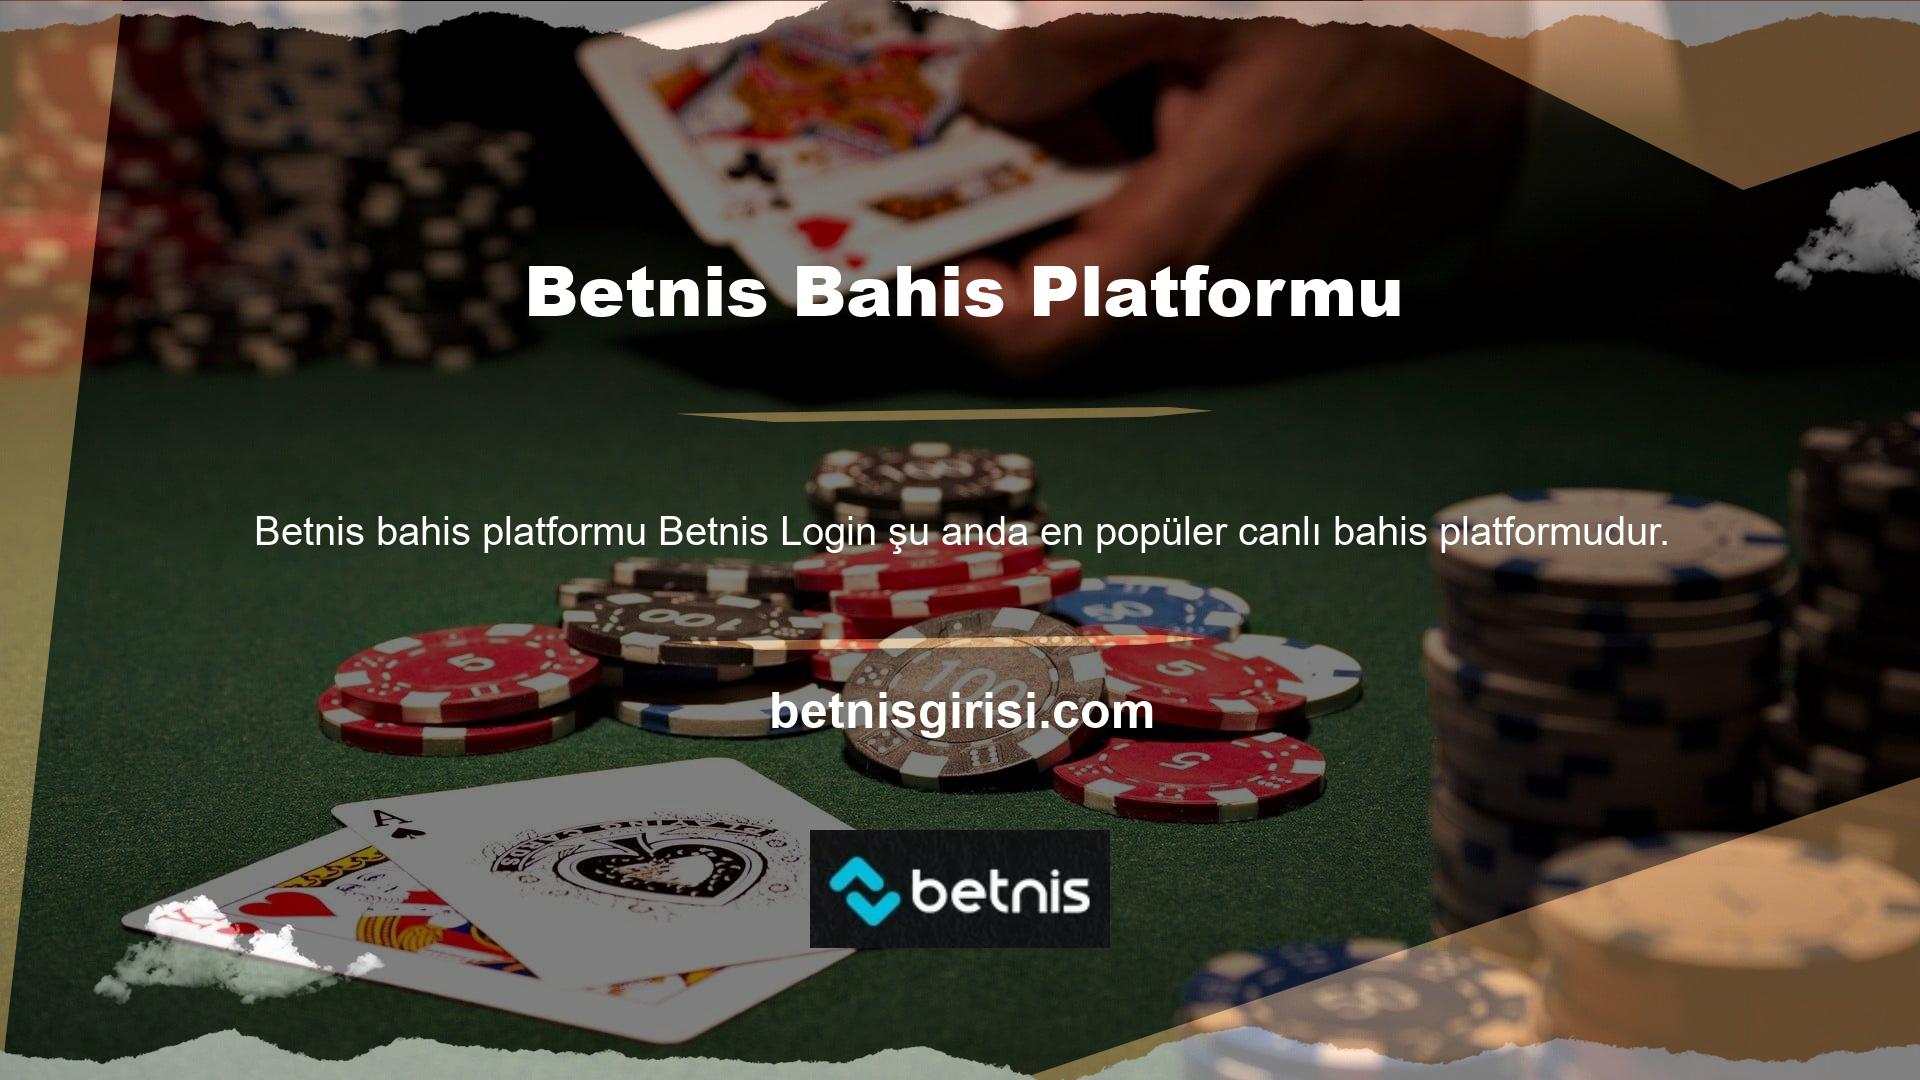 Bu Betnis bahis platformu şirketi, diğer bahis sitelerinden farklı olarak kullanıcı odaklıdır ve kullanıcı memnuniyetini sağlamayı amaçlamaktadır